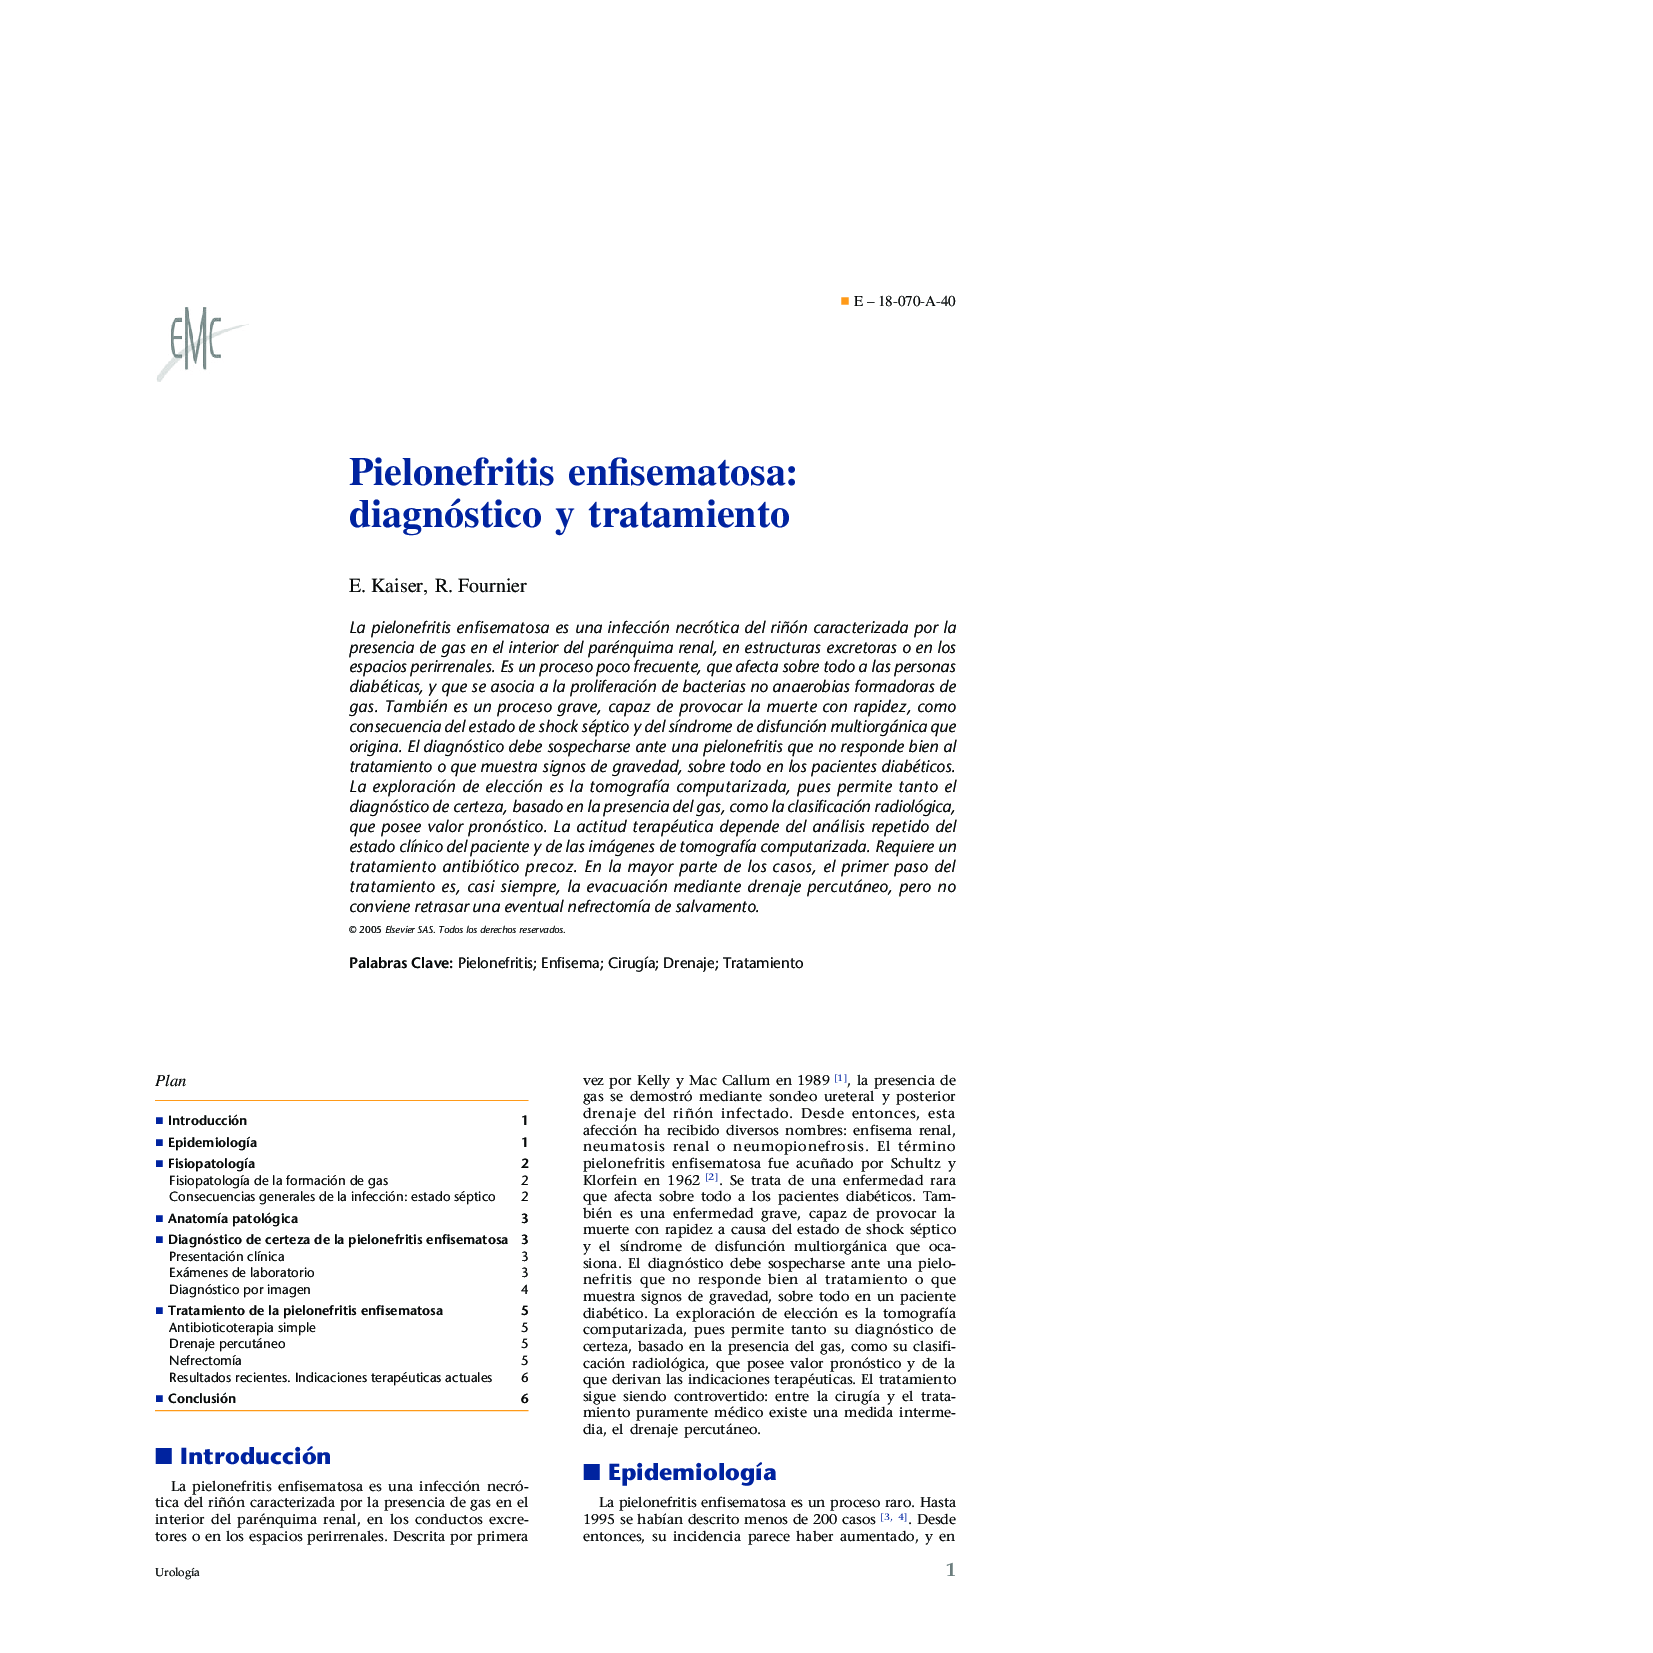 Pielonefritis enfisematosa: diagnóstico y tratamiento